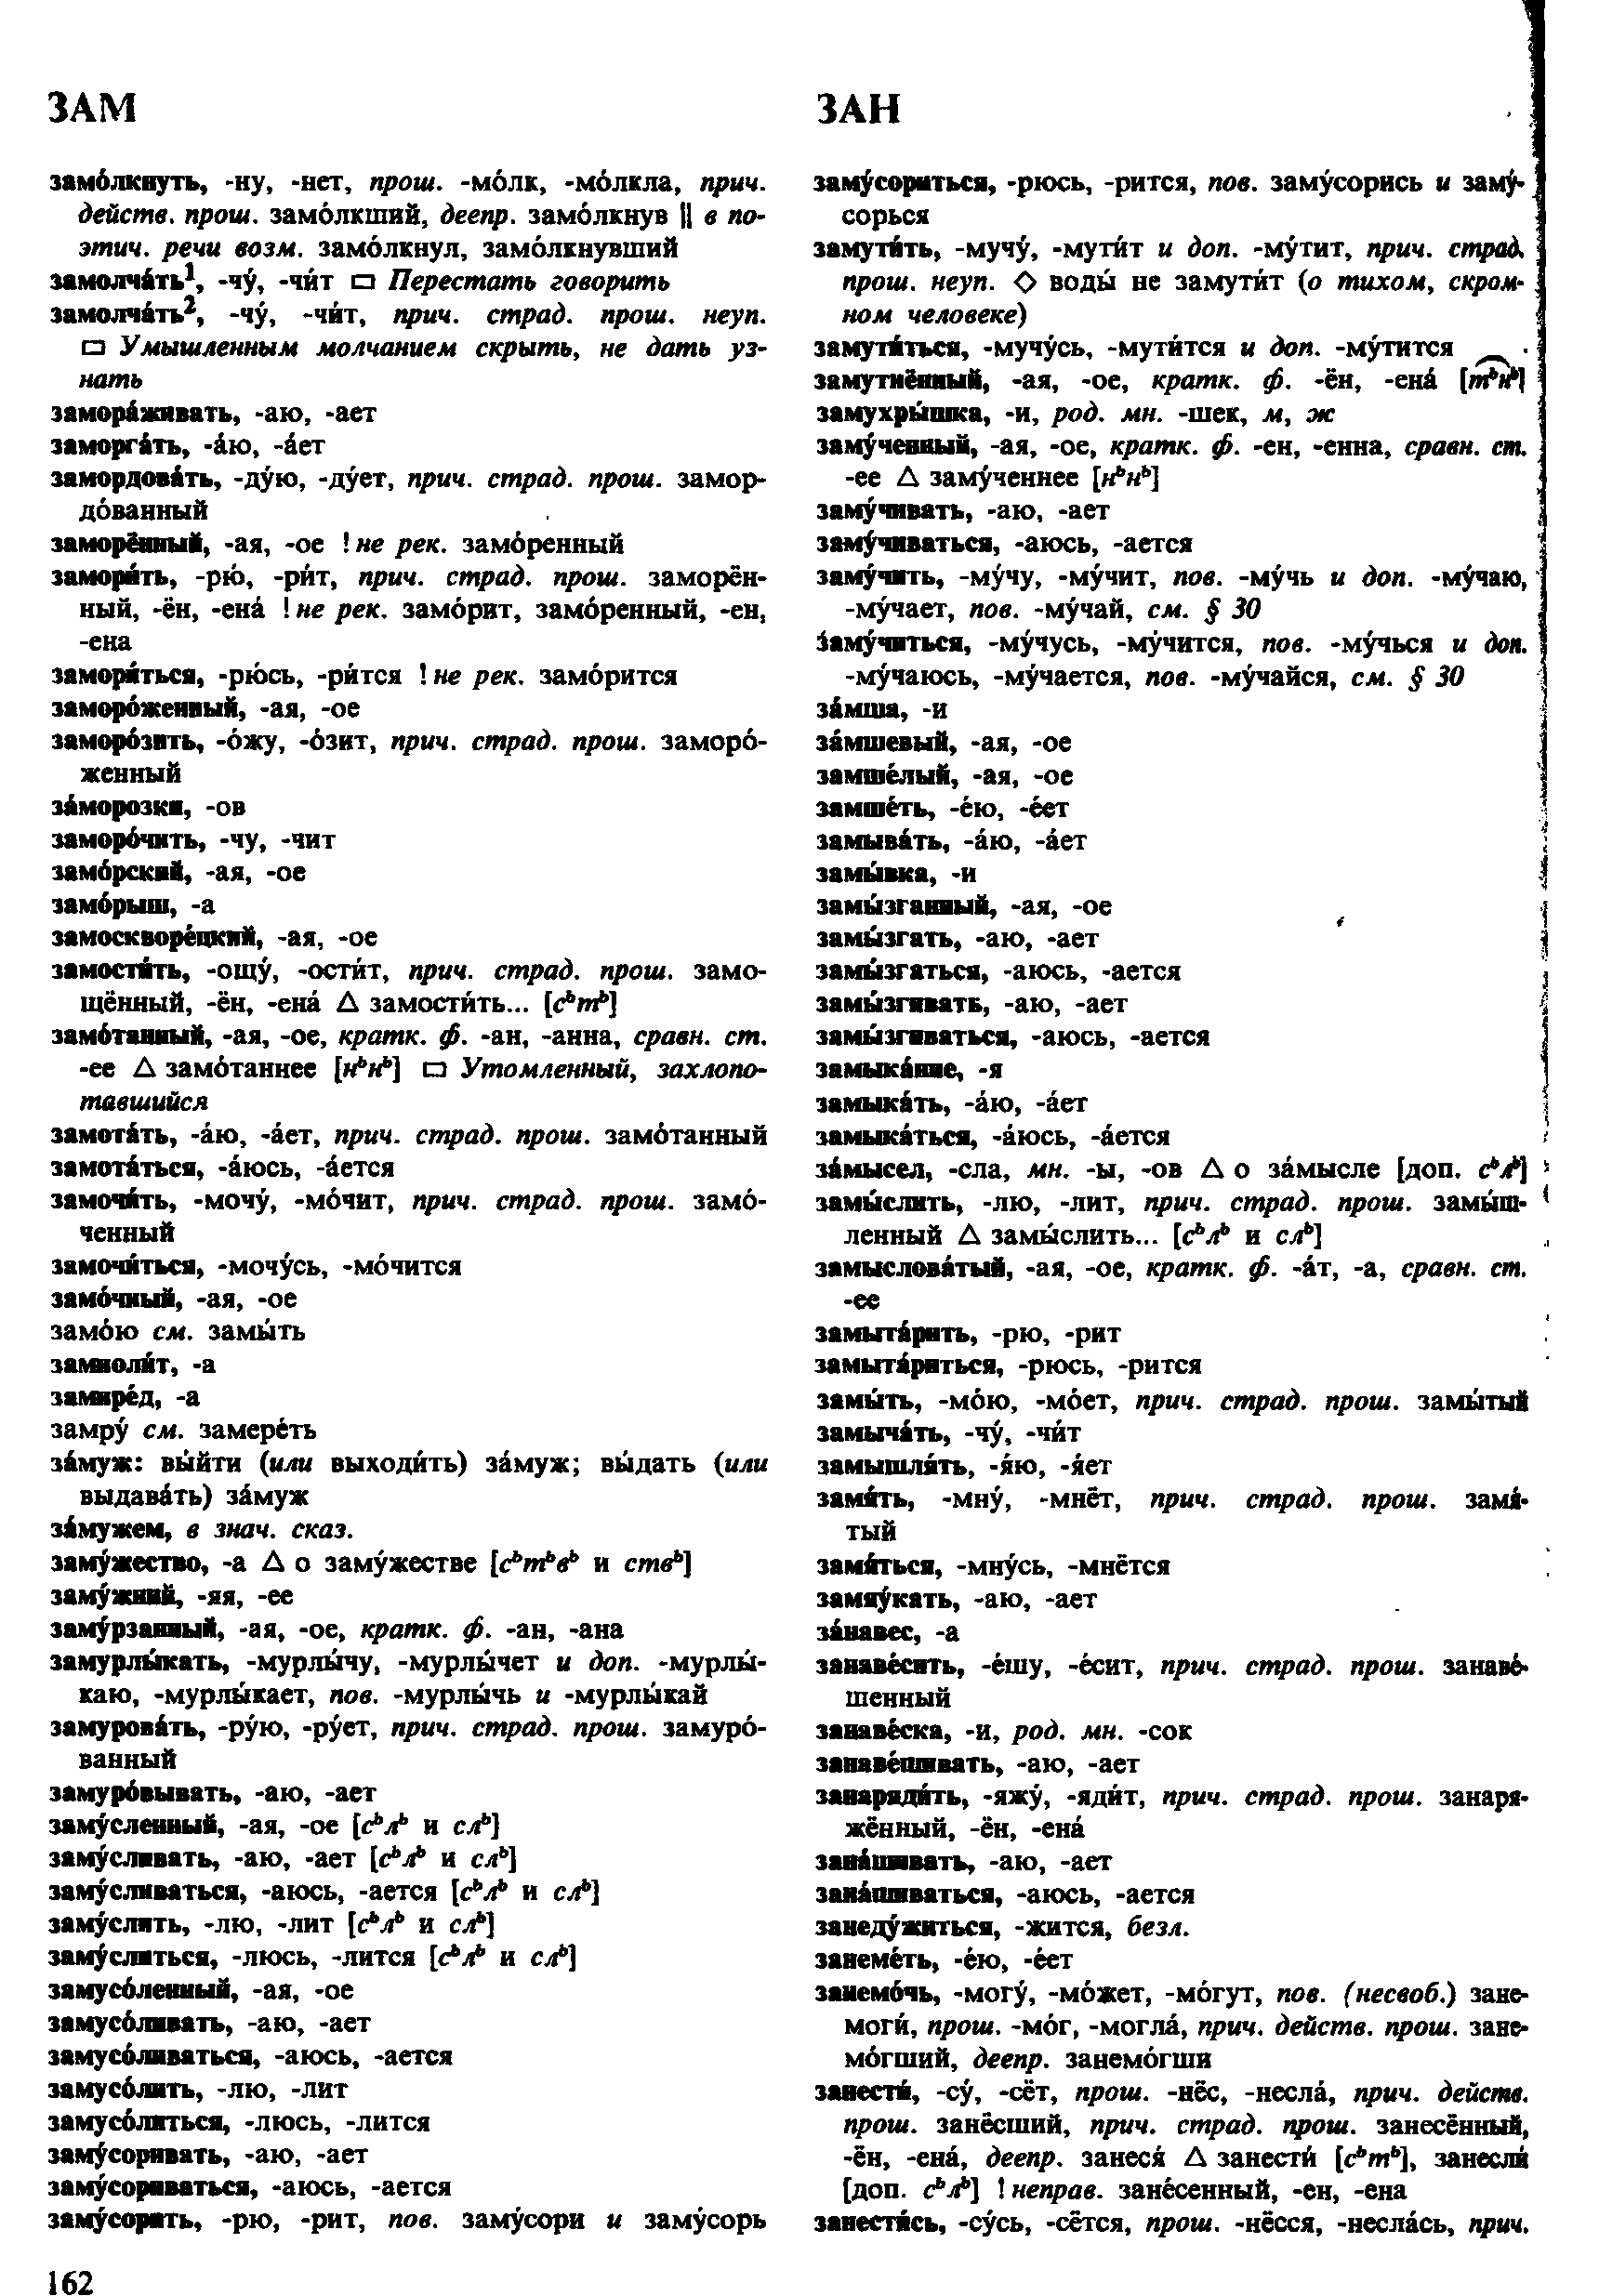 Фотокопия pdf / скан страницы 162 орфоэпического словаря под редакцией Аванесова (4 издание, 1988 год)